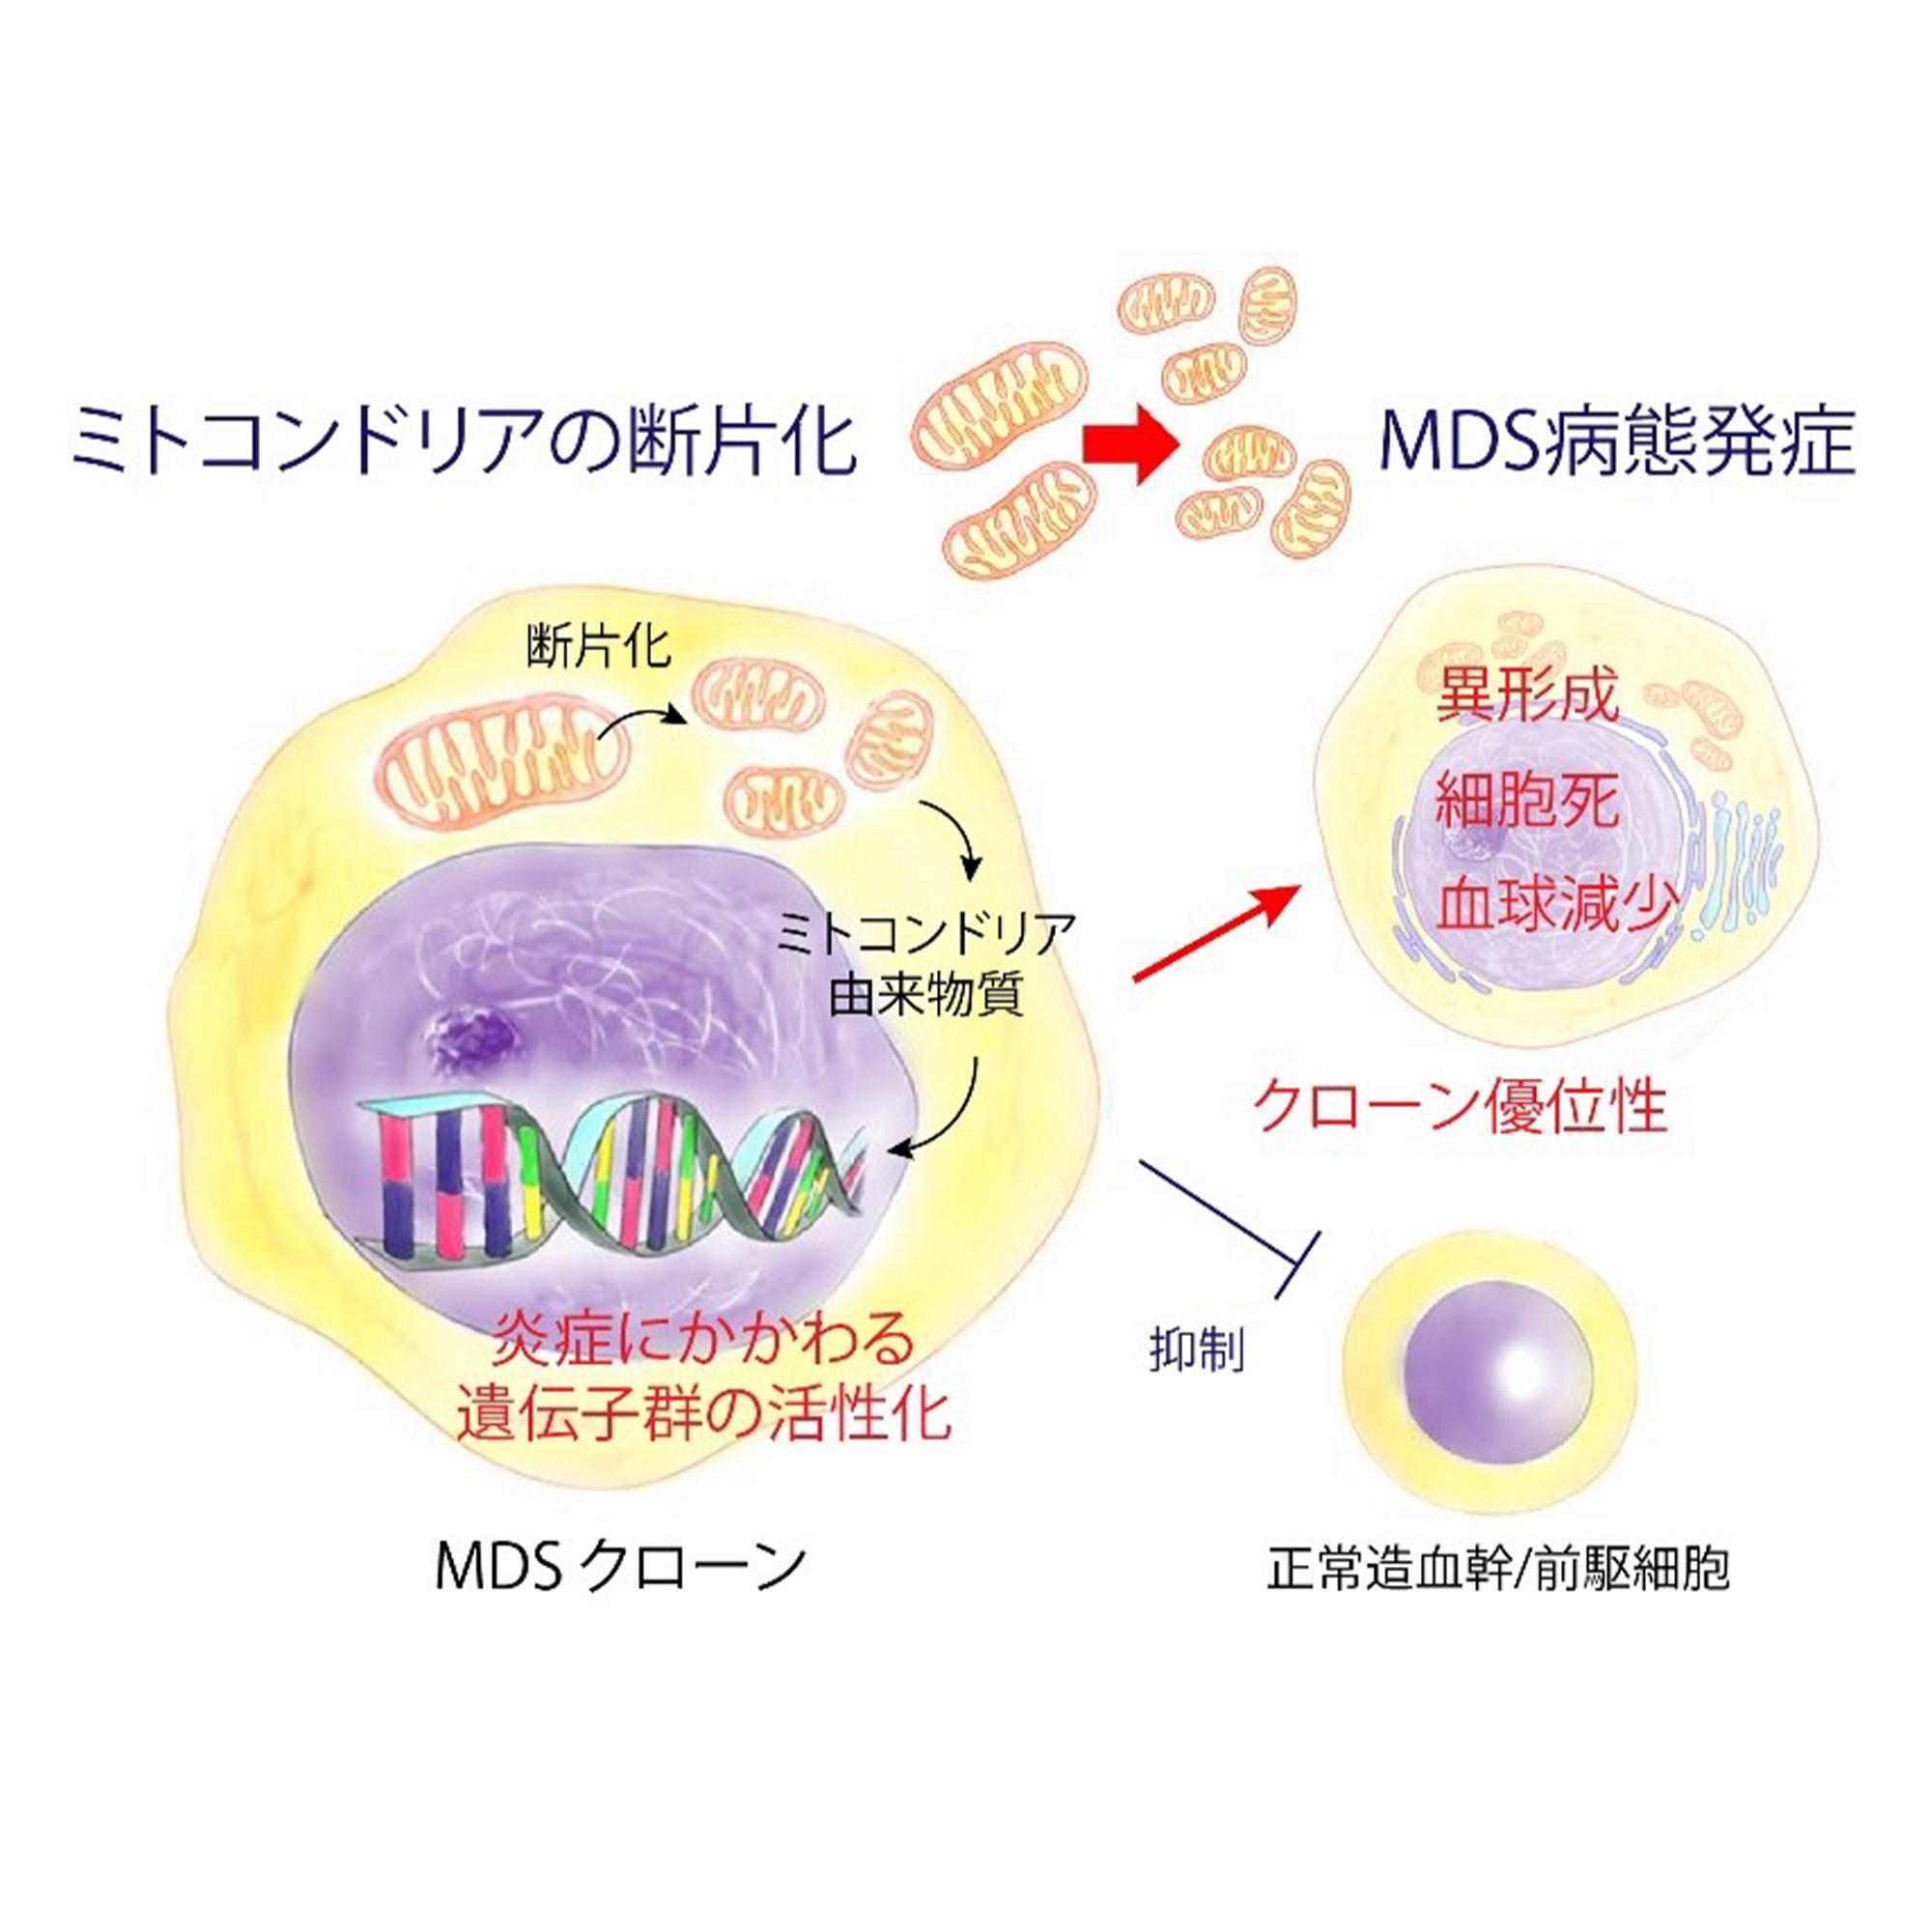 【東京薬科大学】難治性血液がん、骨髄異形成症候群（MDS）の発症機序を解明 ～ミトコンドリア異常を標的とした新規治療薬の開発に期待～